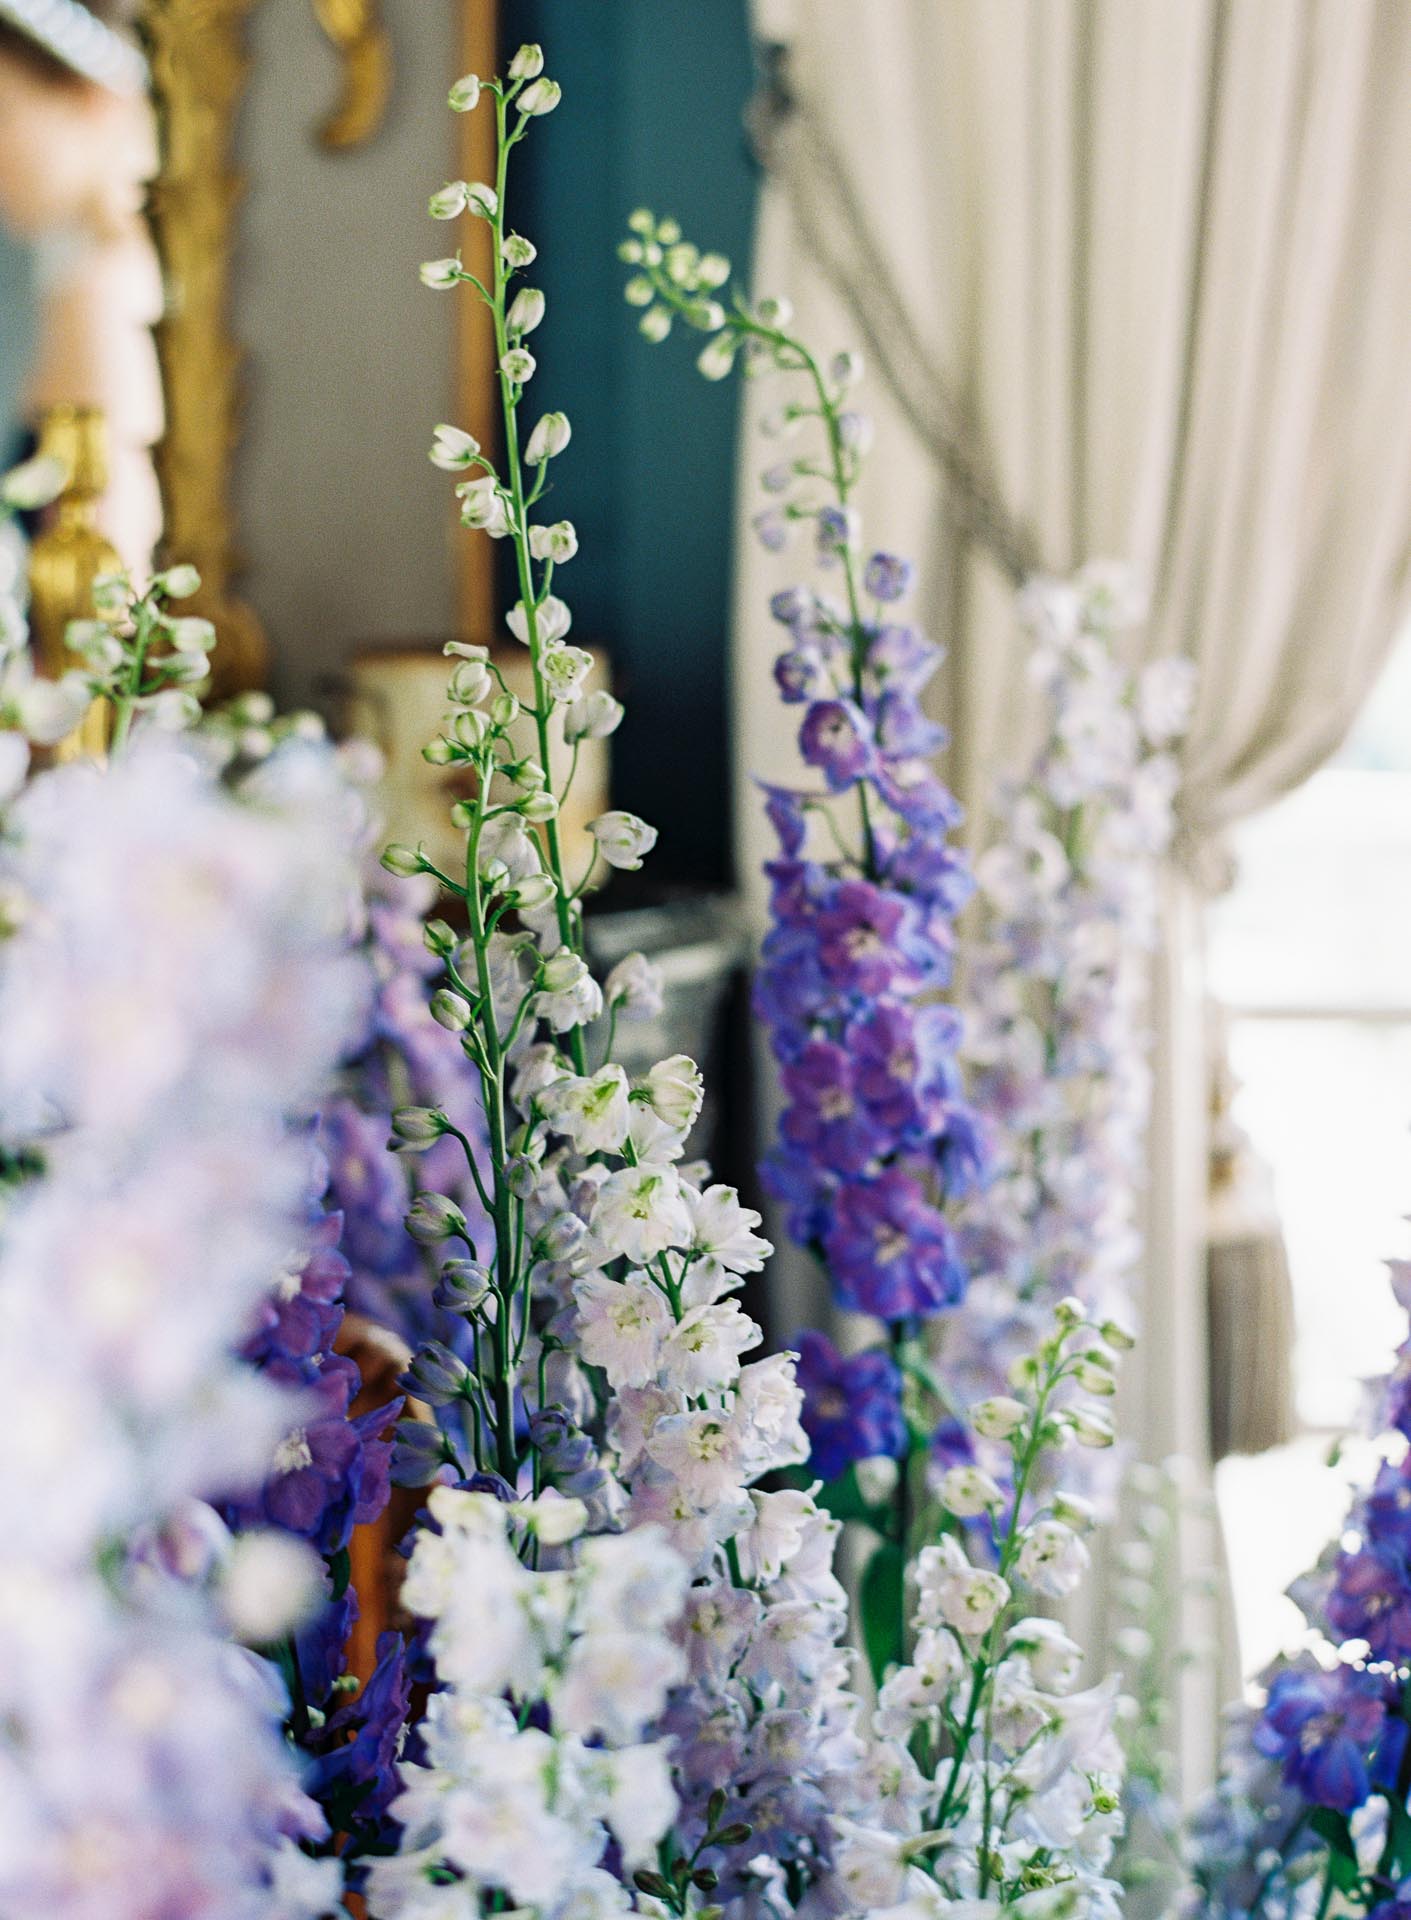 chateau de villette fashion inspiration styled shoot editorial event venue france luxury wedding florals blue purple delphinium